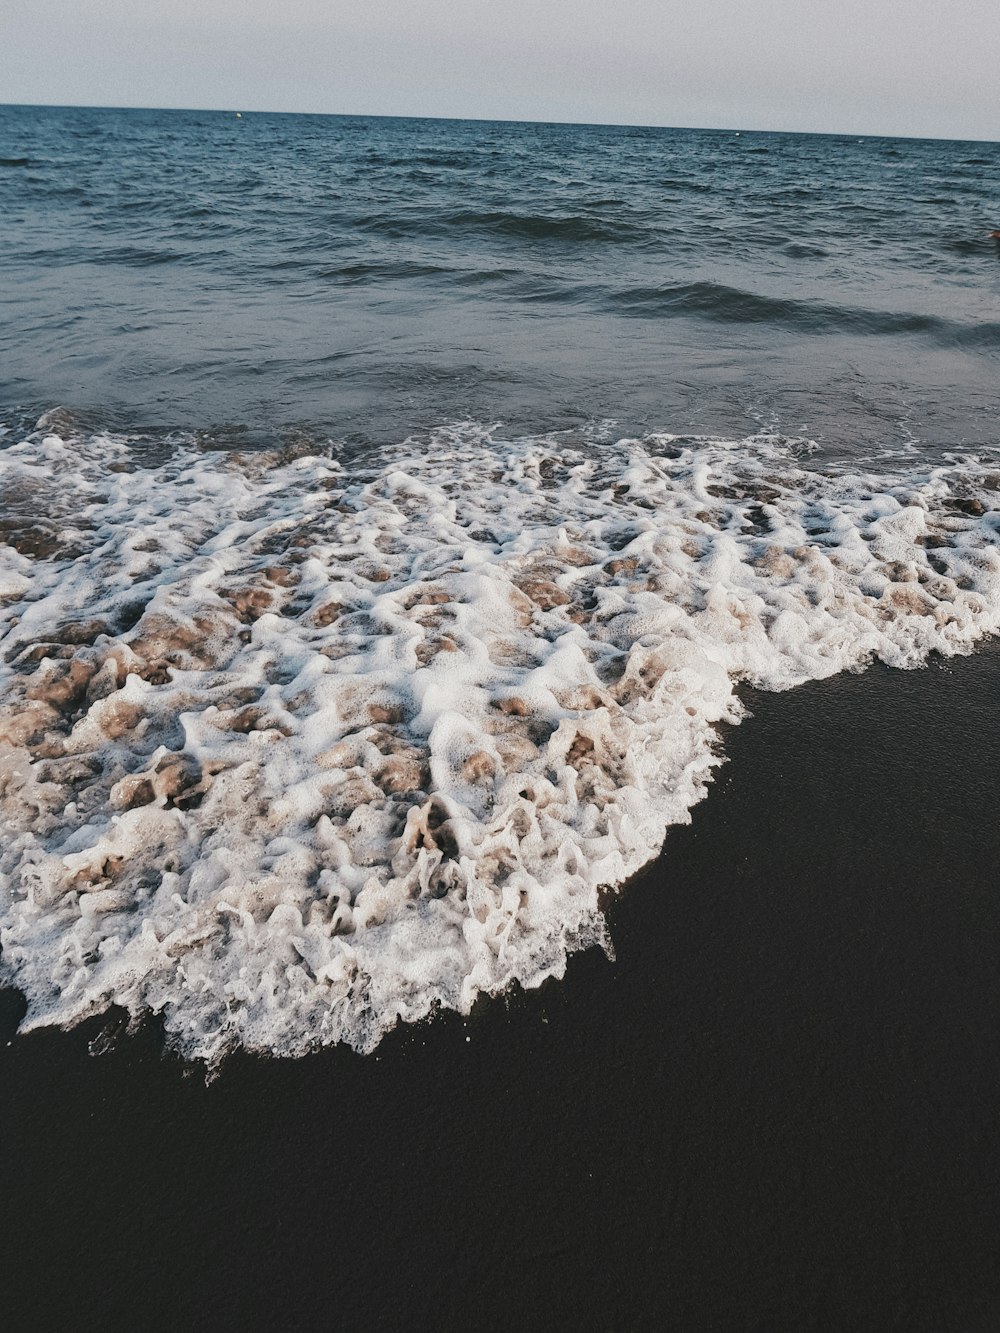 sea waves crashing on shore during daytime